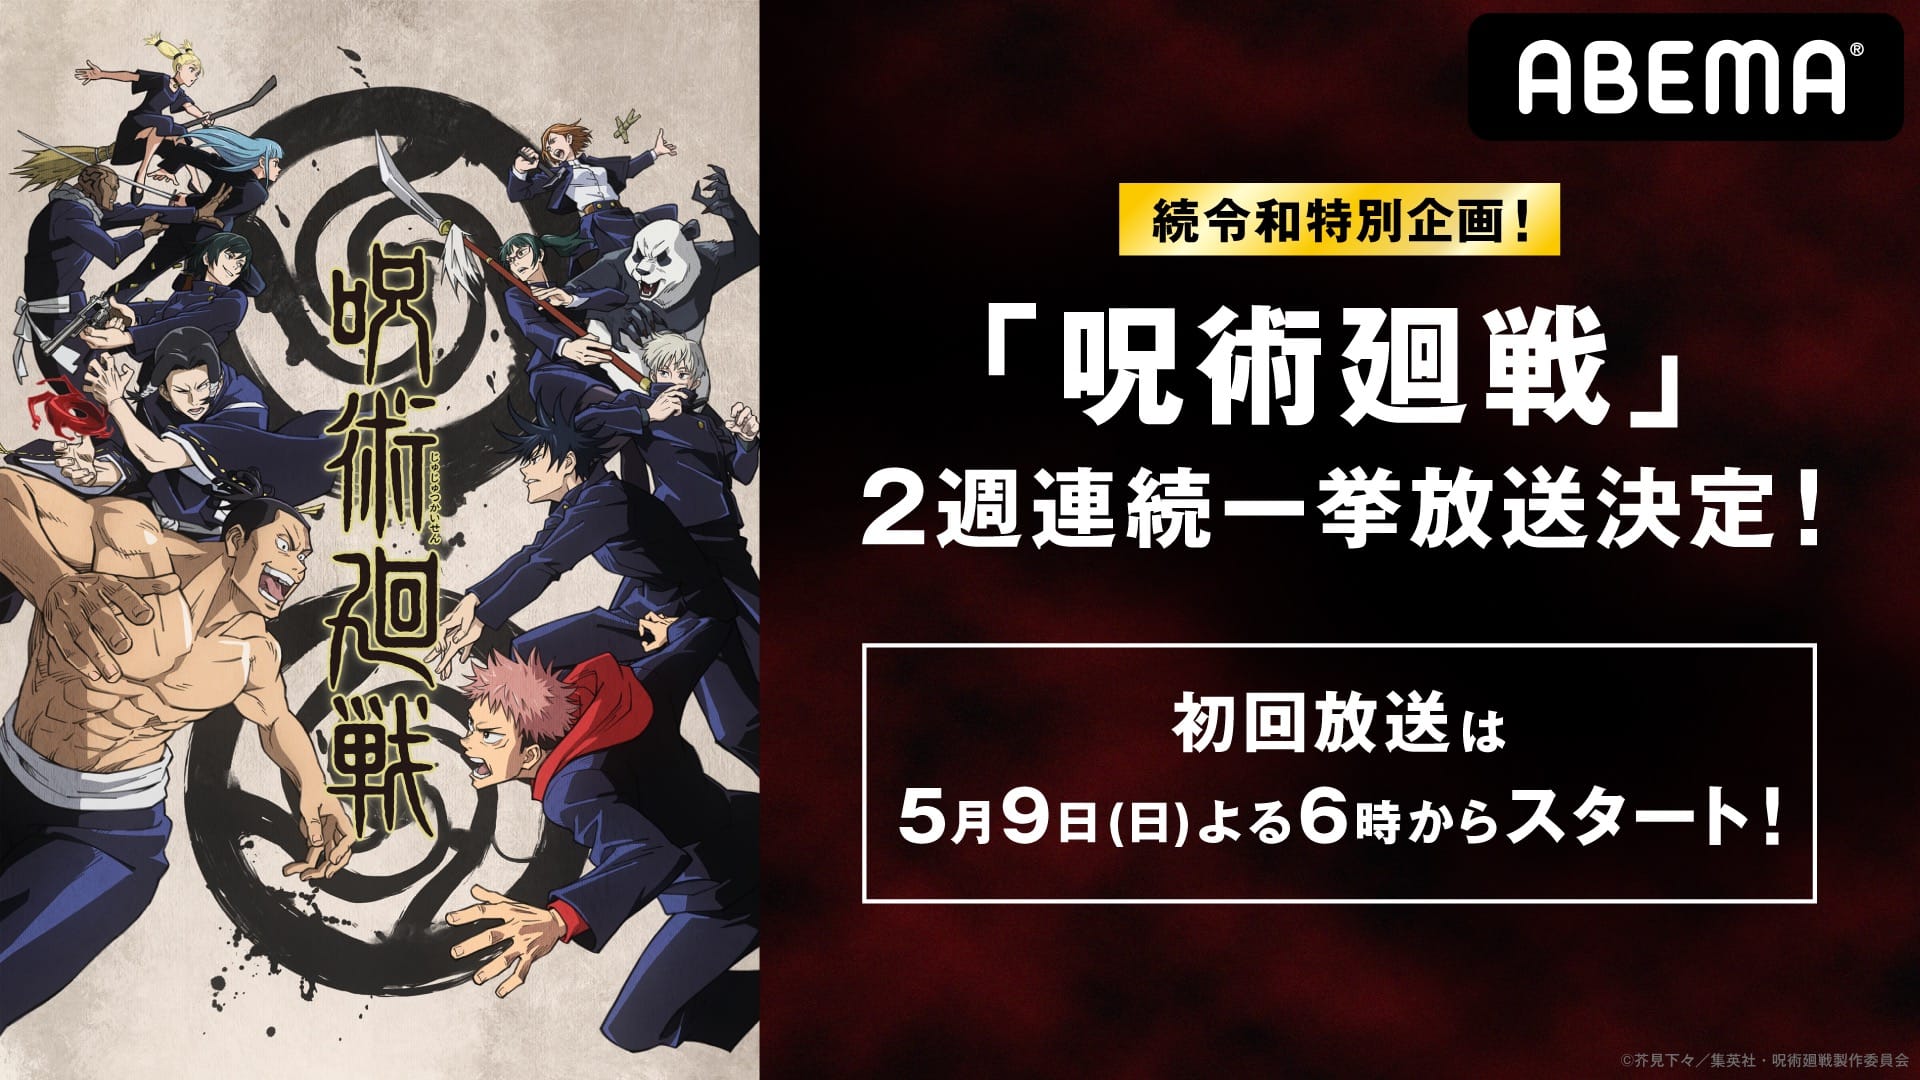 「呪術廻戦」ABEMAアニメ2チャンネルで5月9日・16日に無料一挙放送!